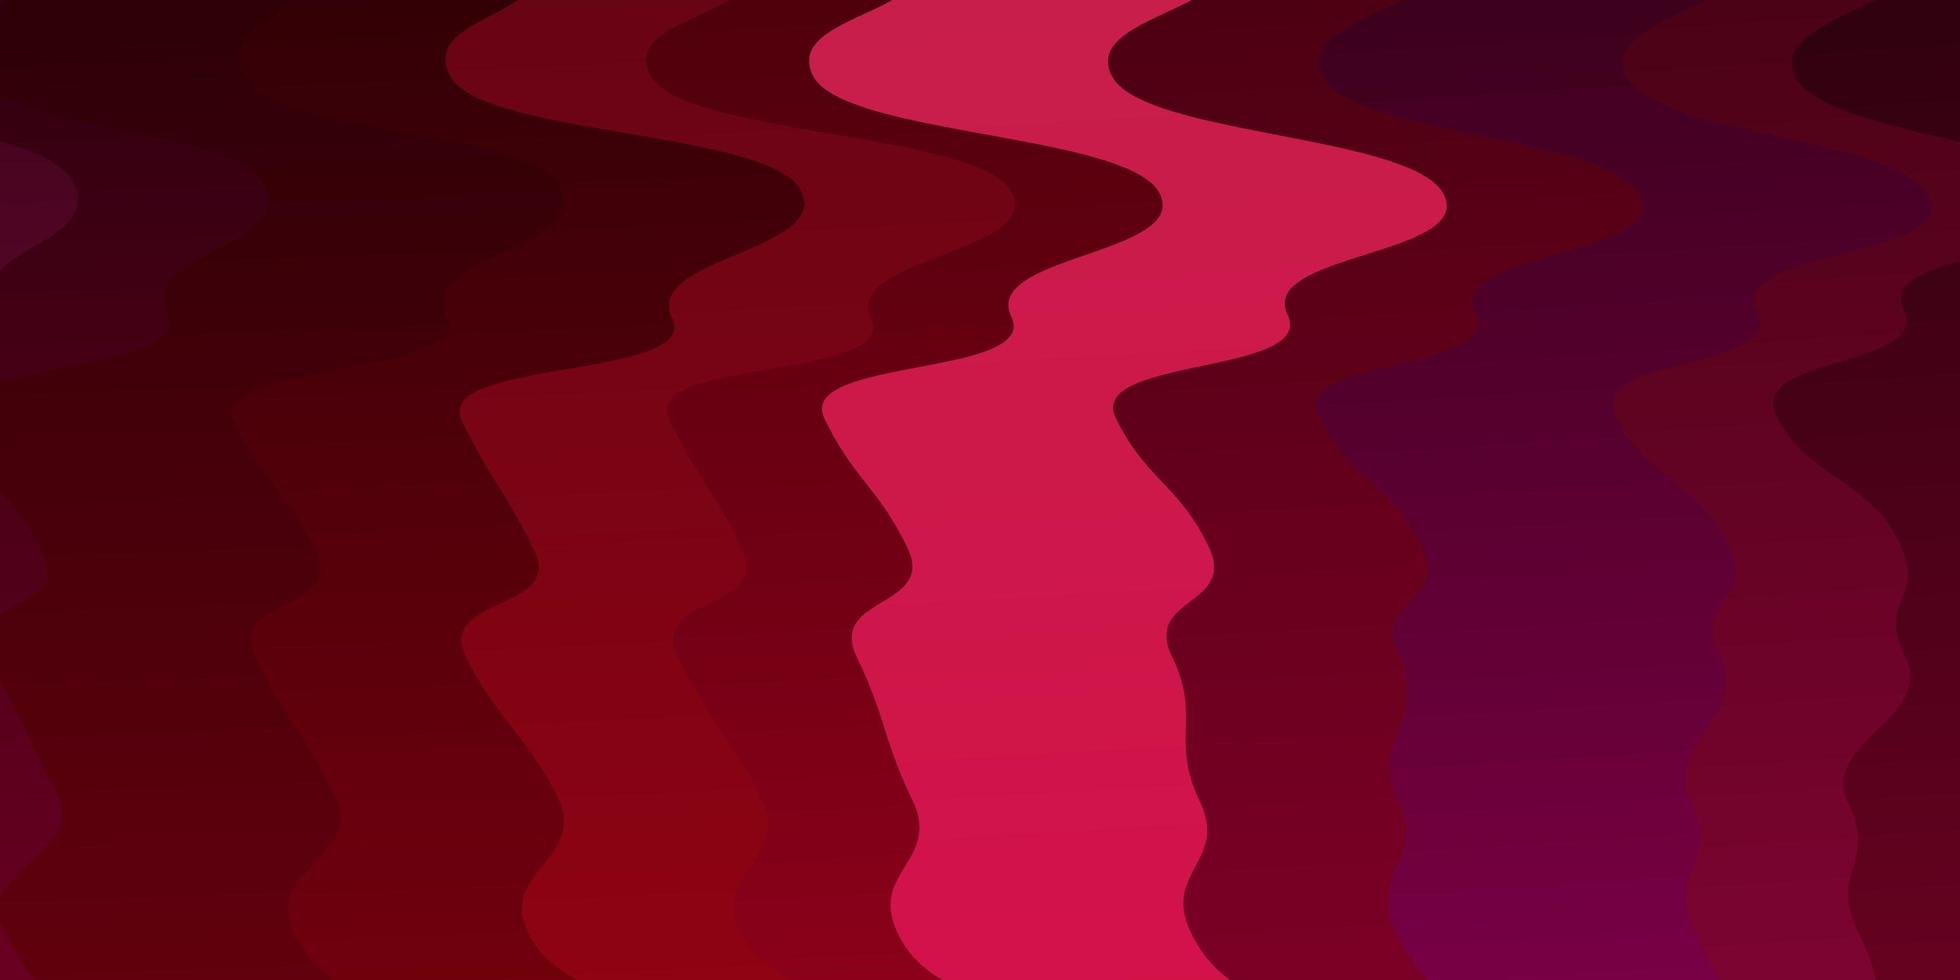 mörk röd vektor bakgrund med sneda linjer. färgstark illustration, som består av kurvor. mönster för reklam, annonser.